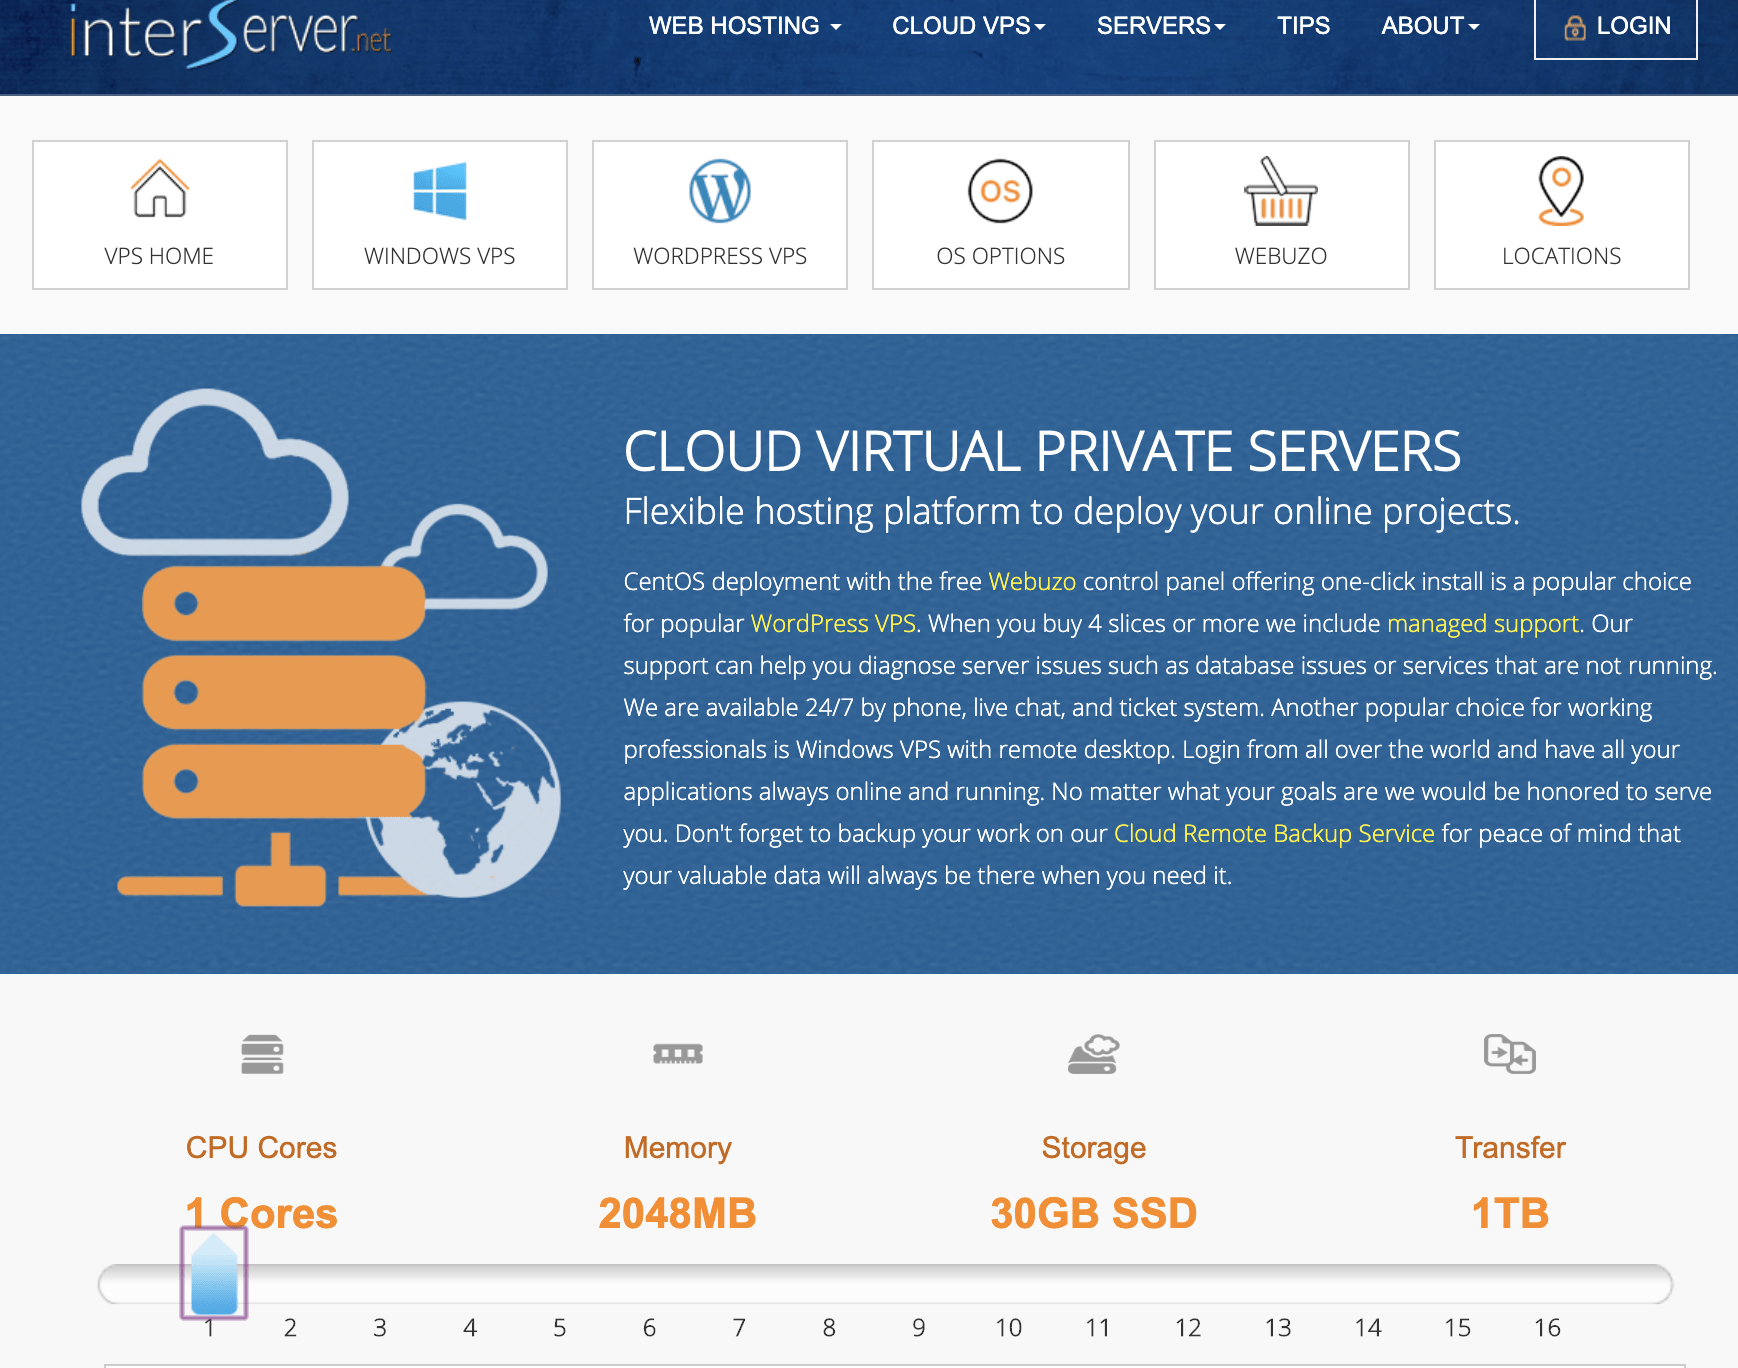 InterServer's Cloud Hosting